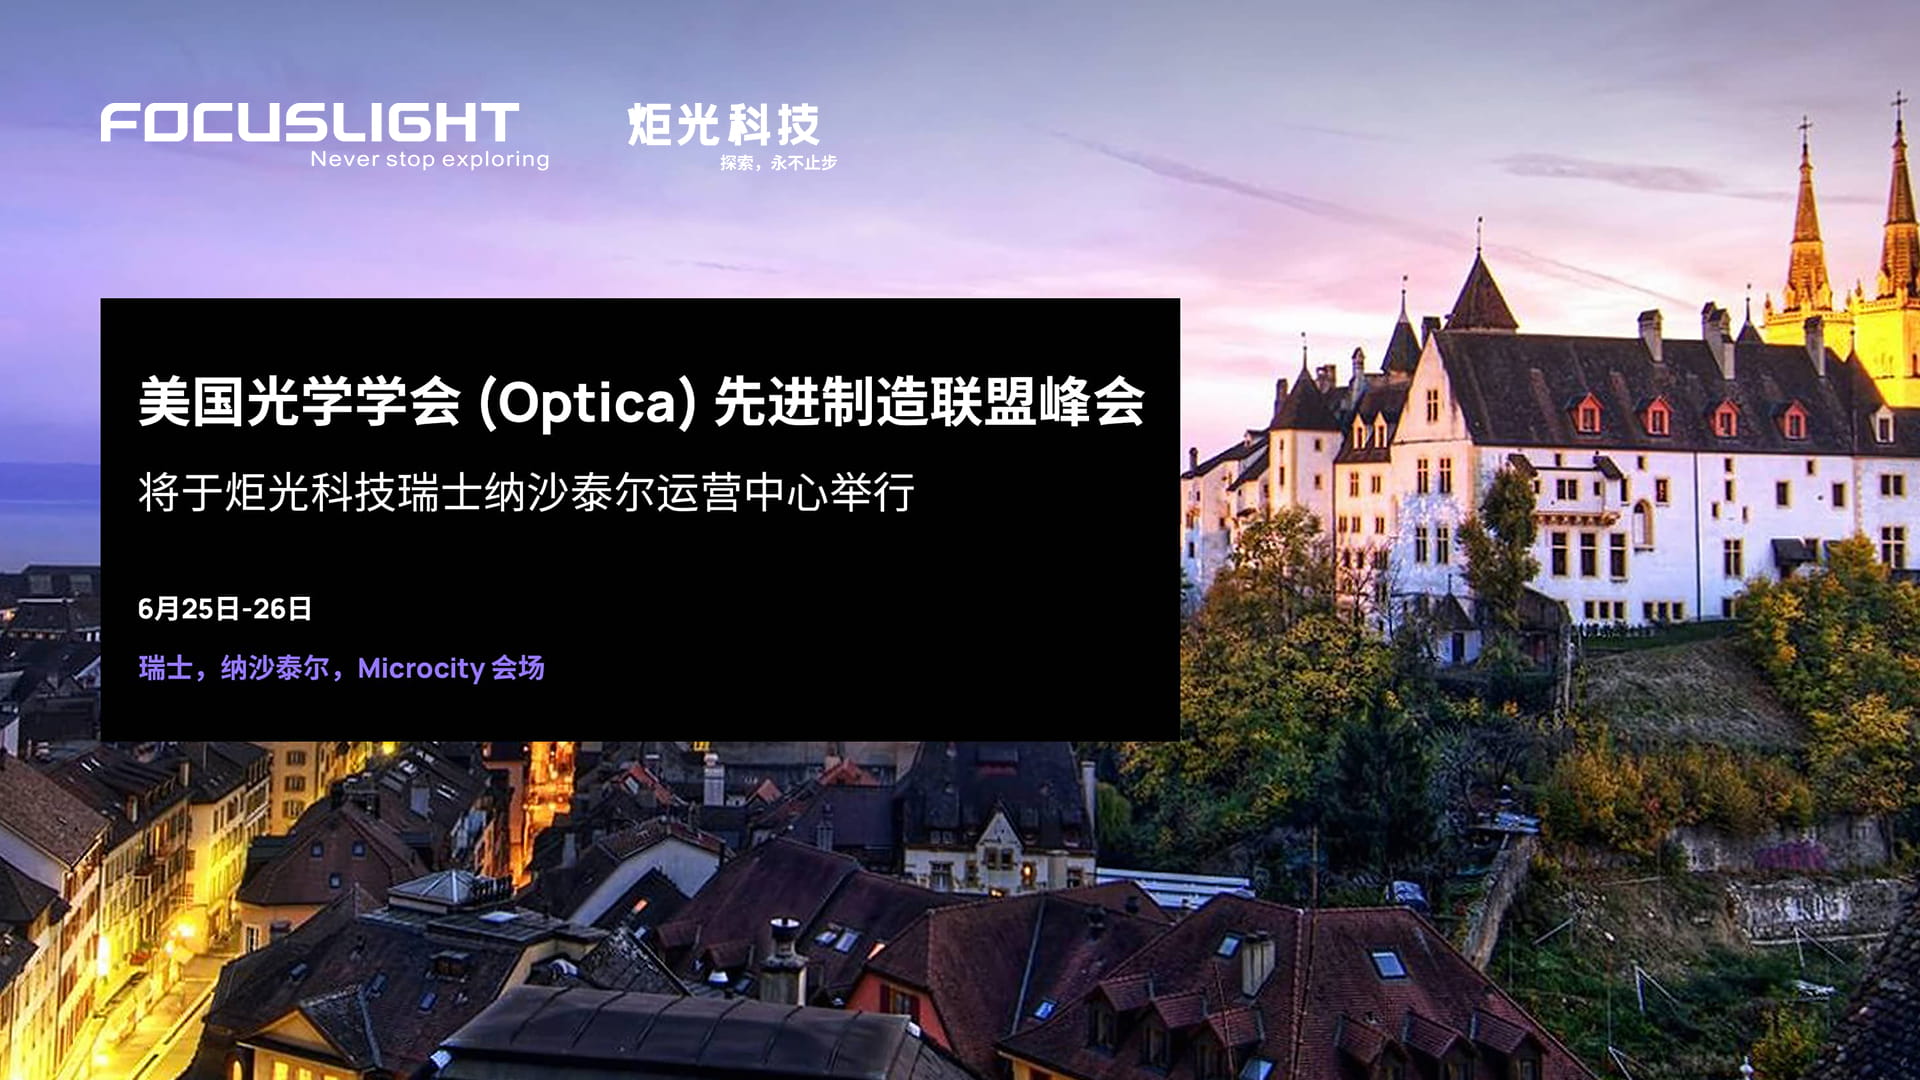 美国光学学会(Optica)先进制造联盟峰会将于炬光科技瑞士纳沙泰尔运营中心举行